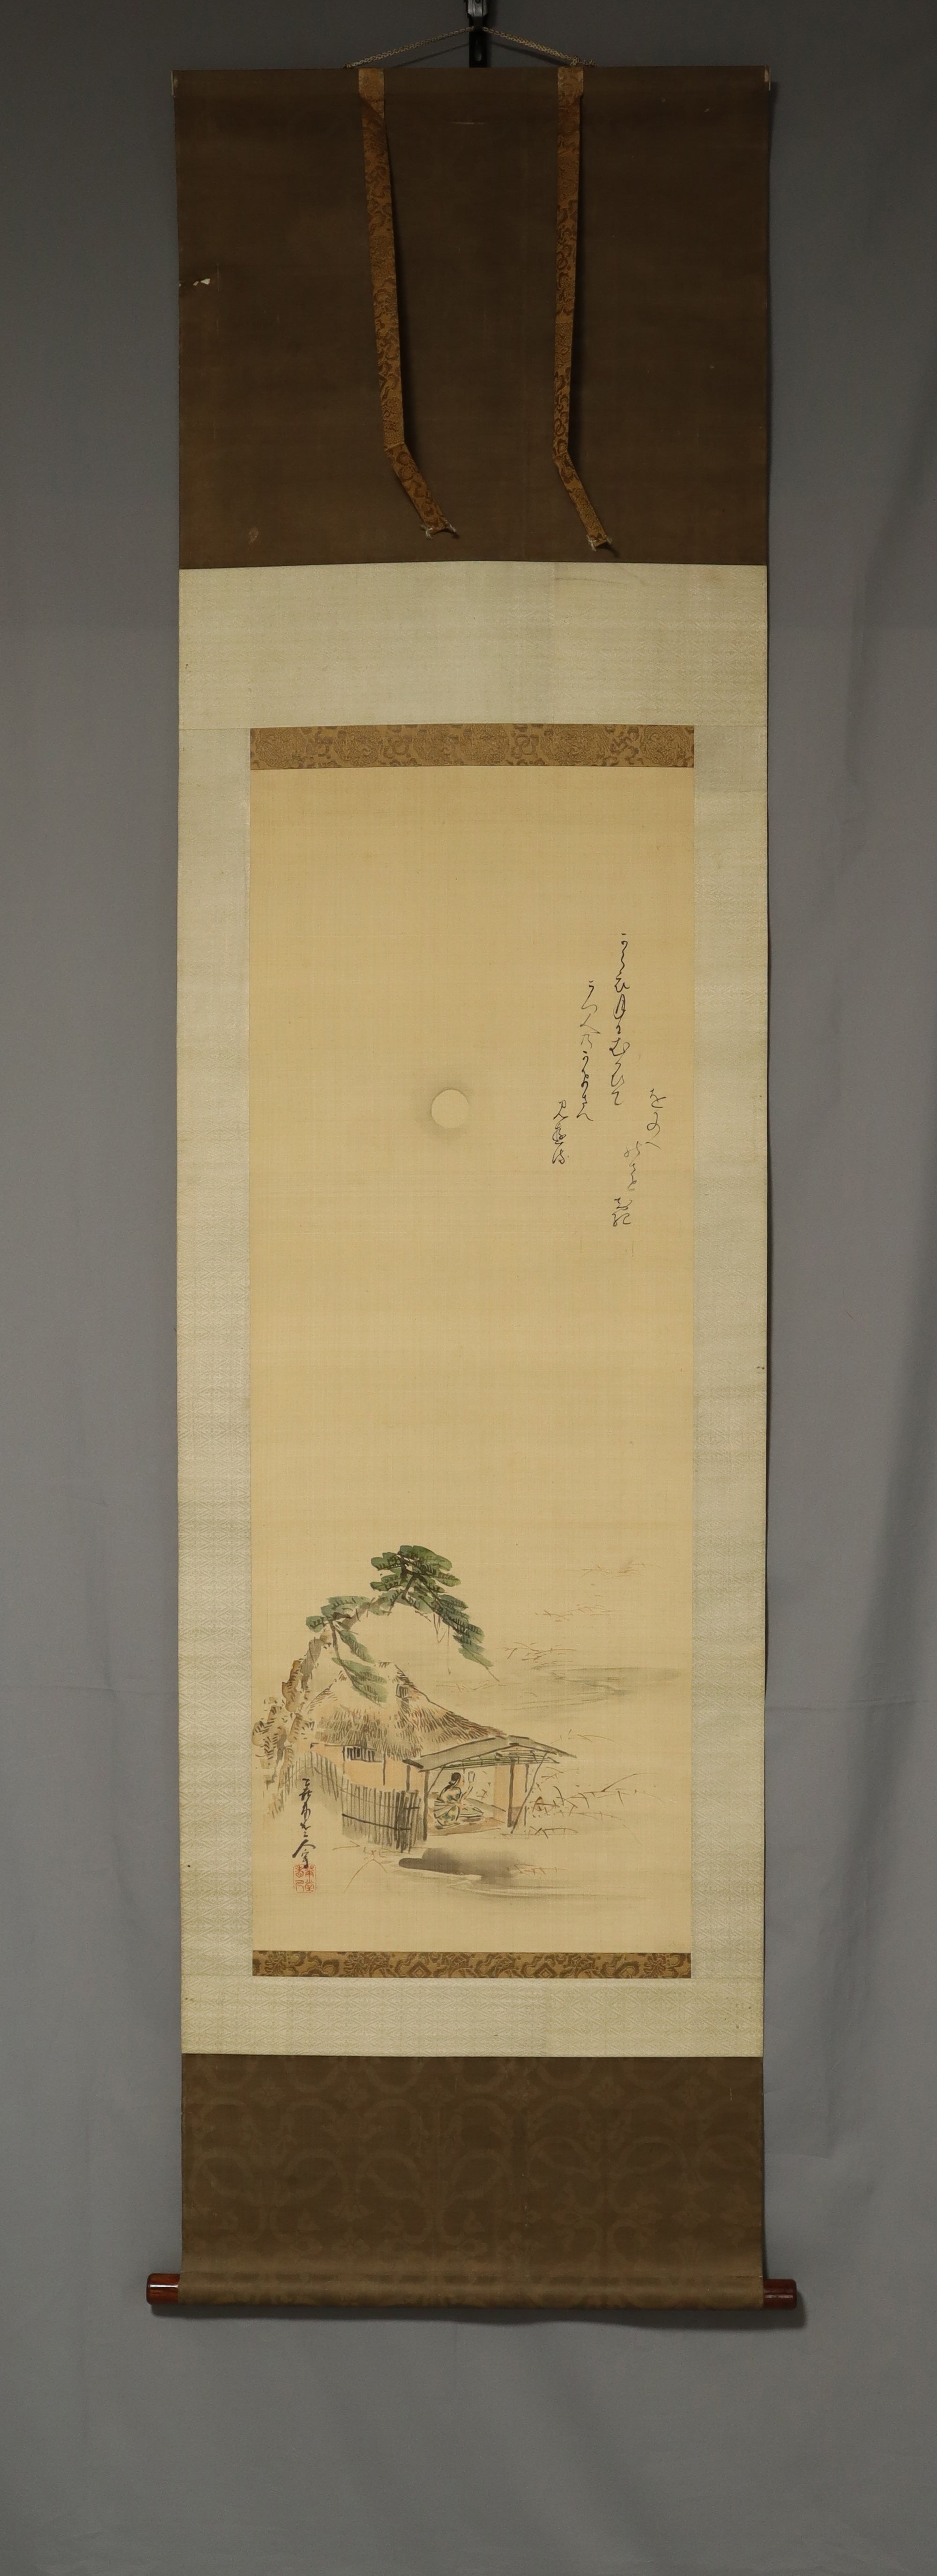 Kida Kado (1802-1879) ,Hatta Tomonori (1799-1873)  